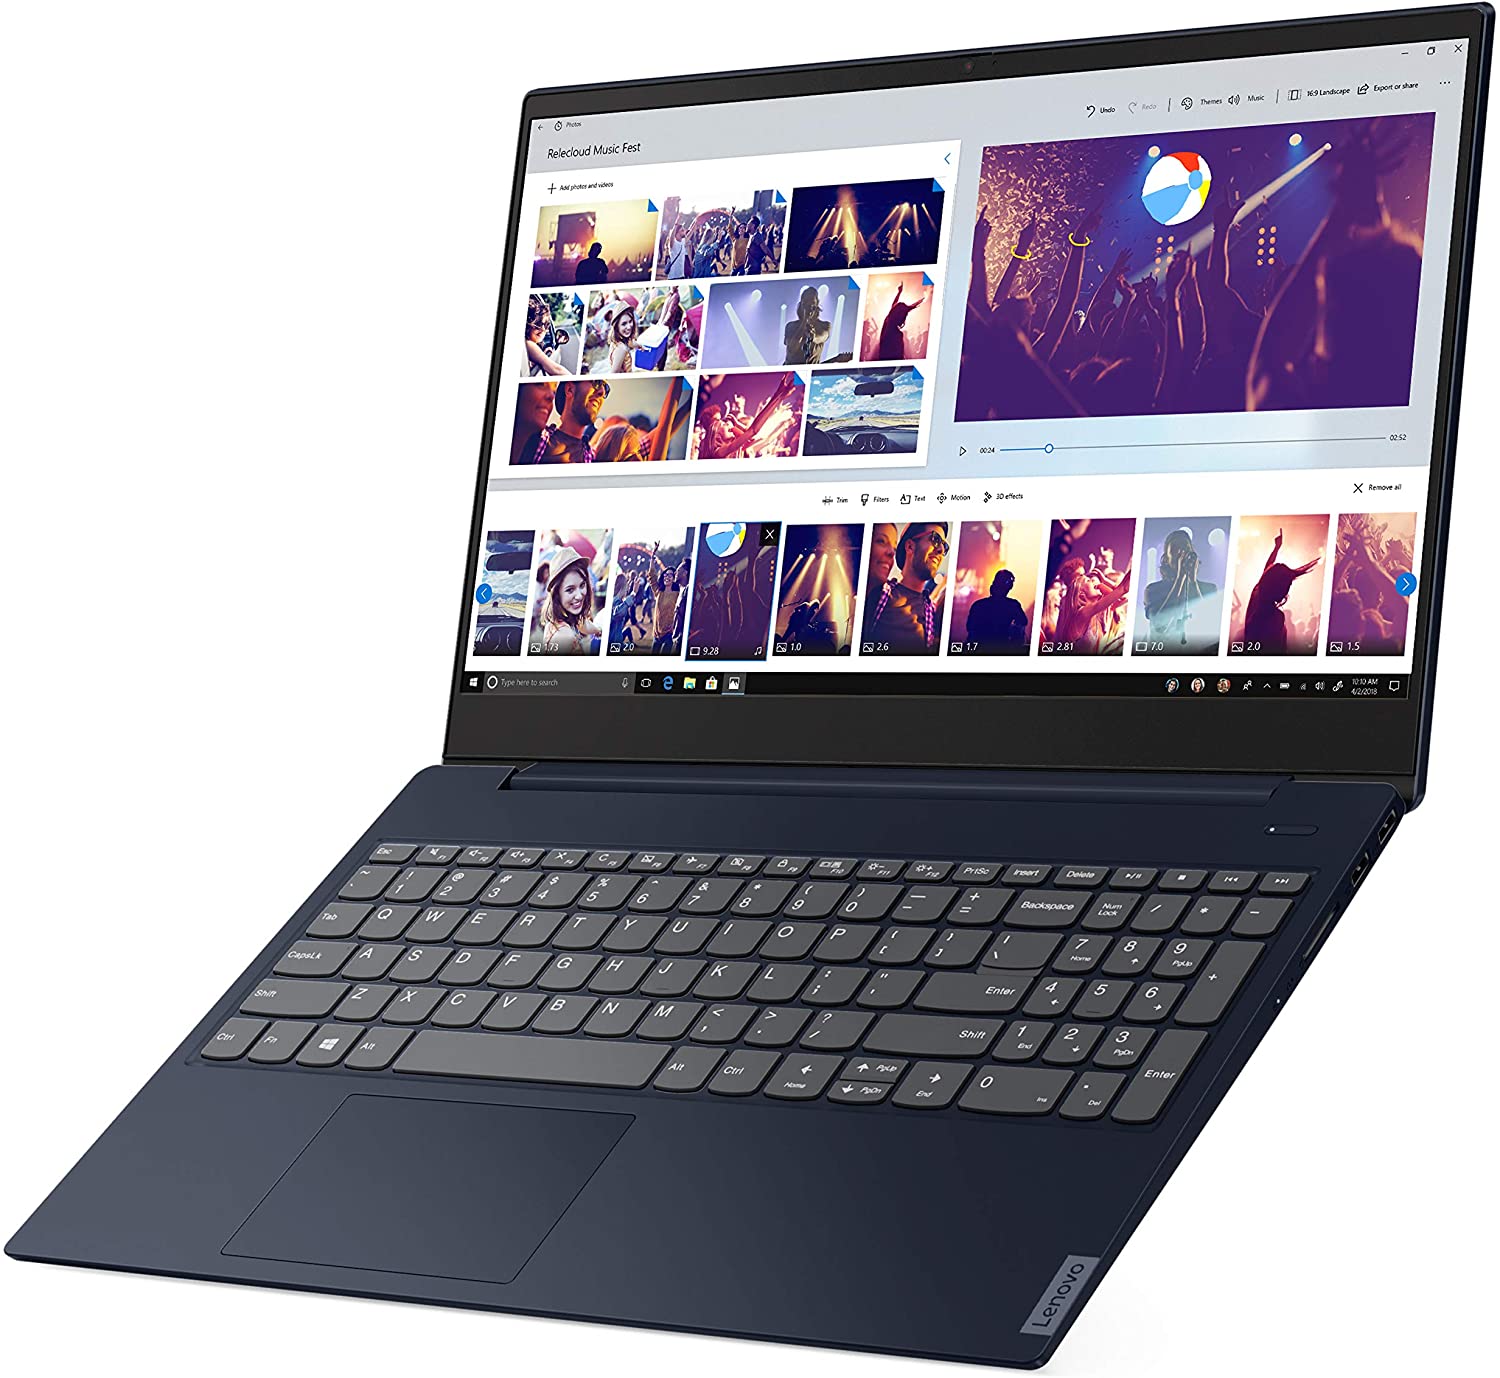 Best laptop under $400